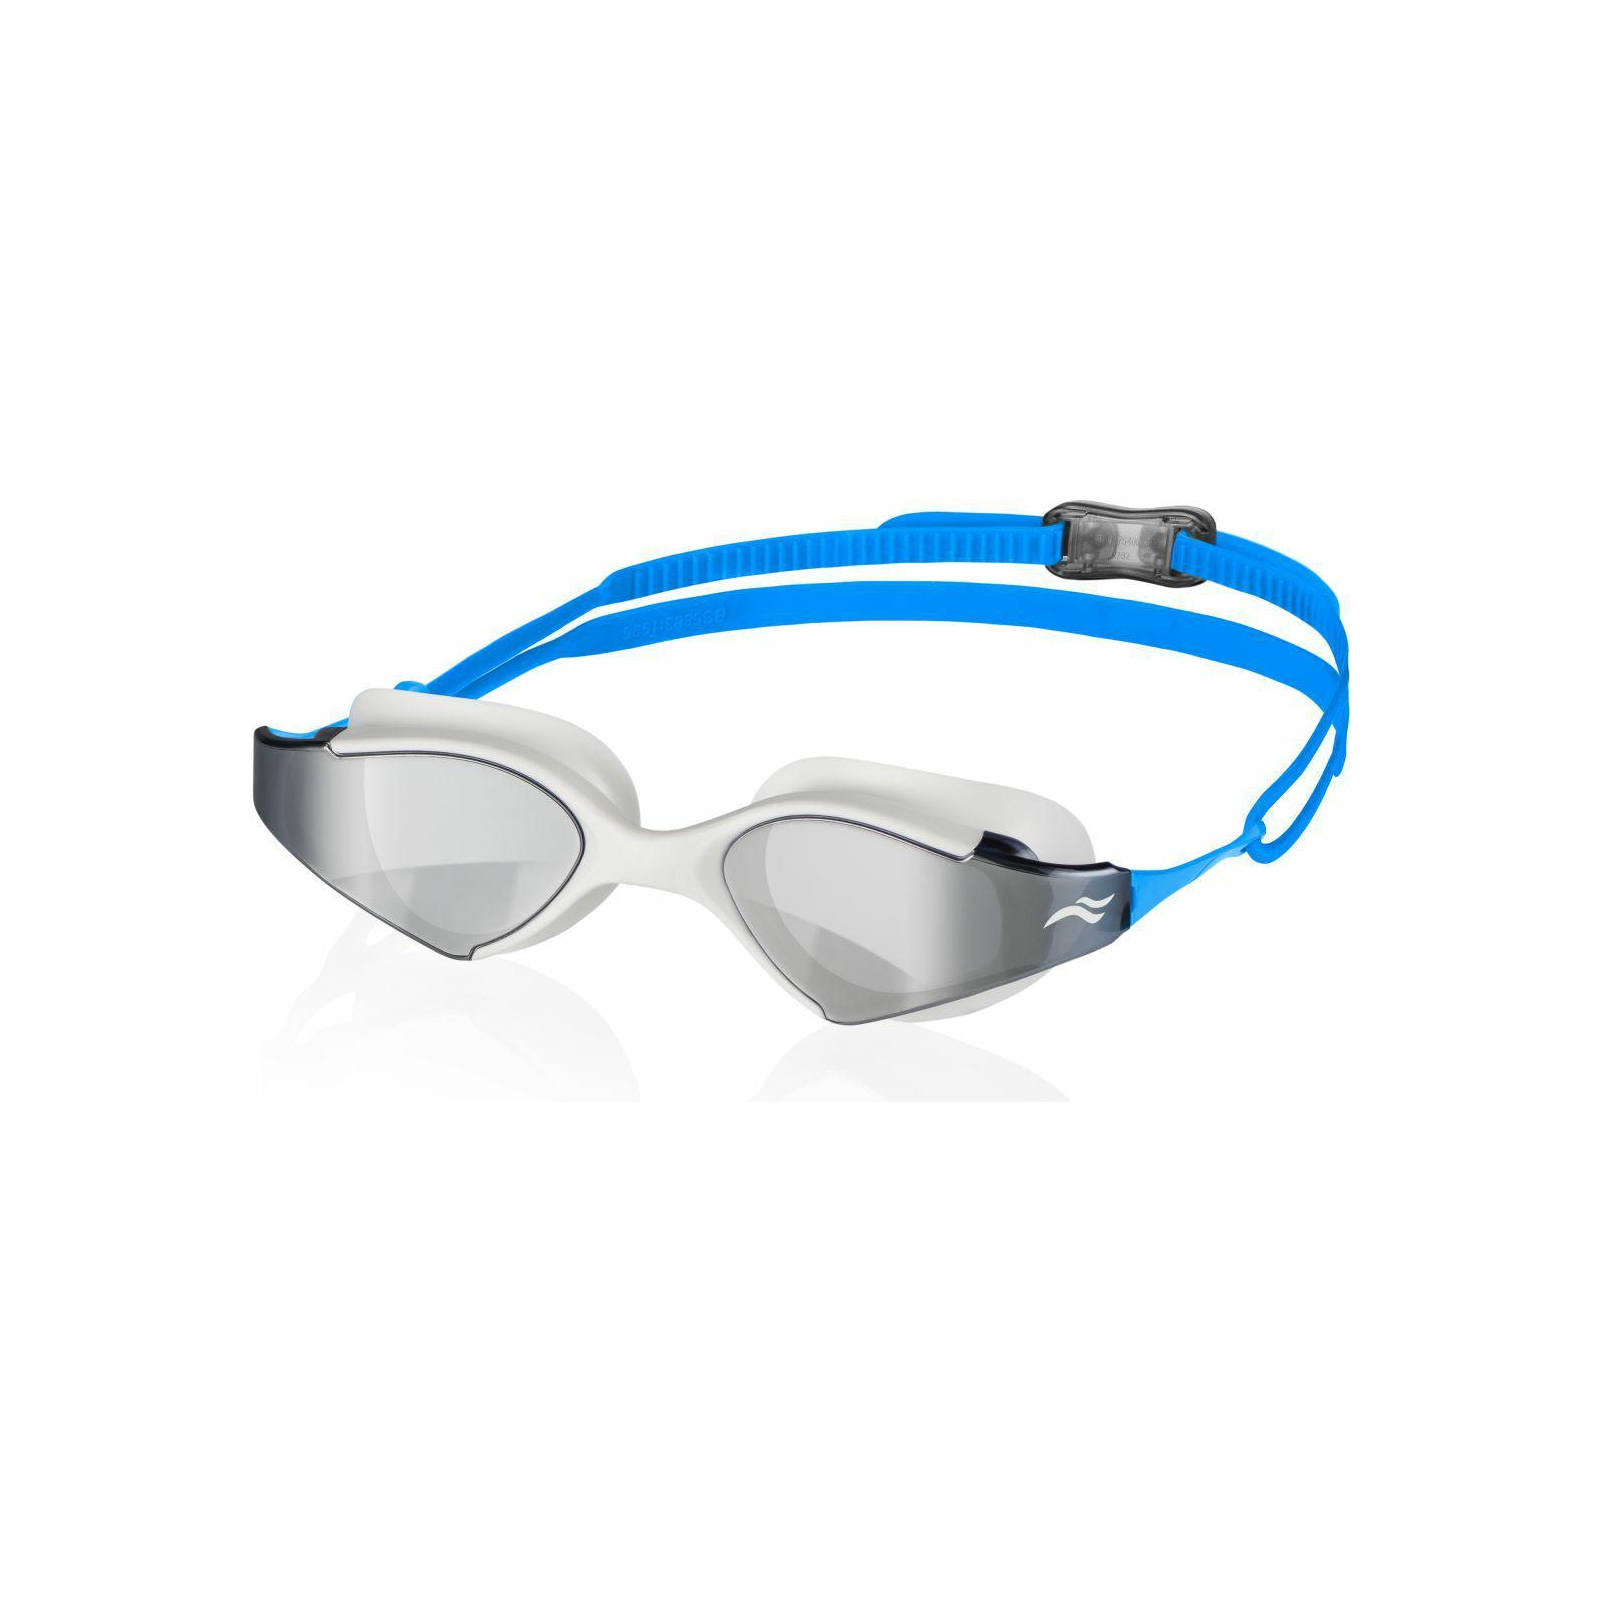 Очки для плавания Aqua Speed Blade Mirror 060-51 6139 білий, блакитний OSFM (5908217661395)